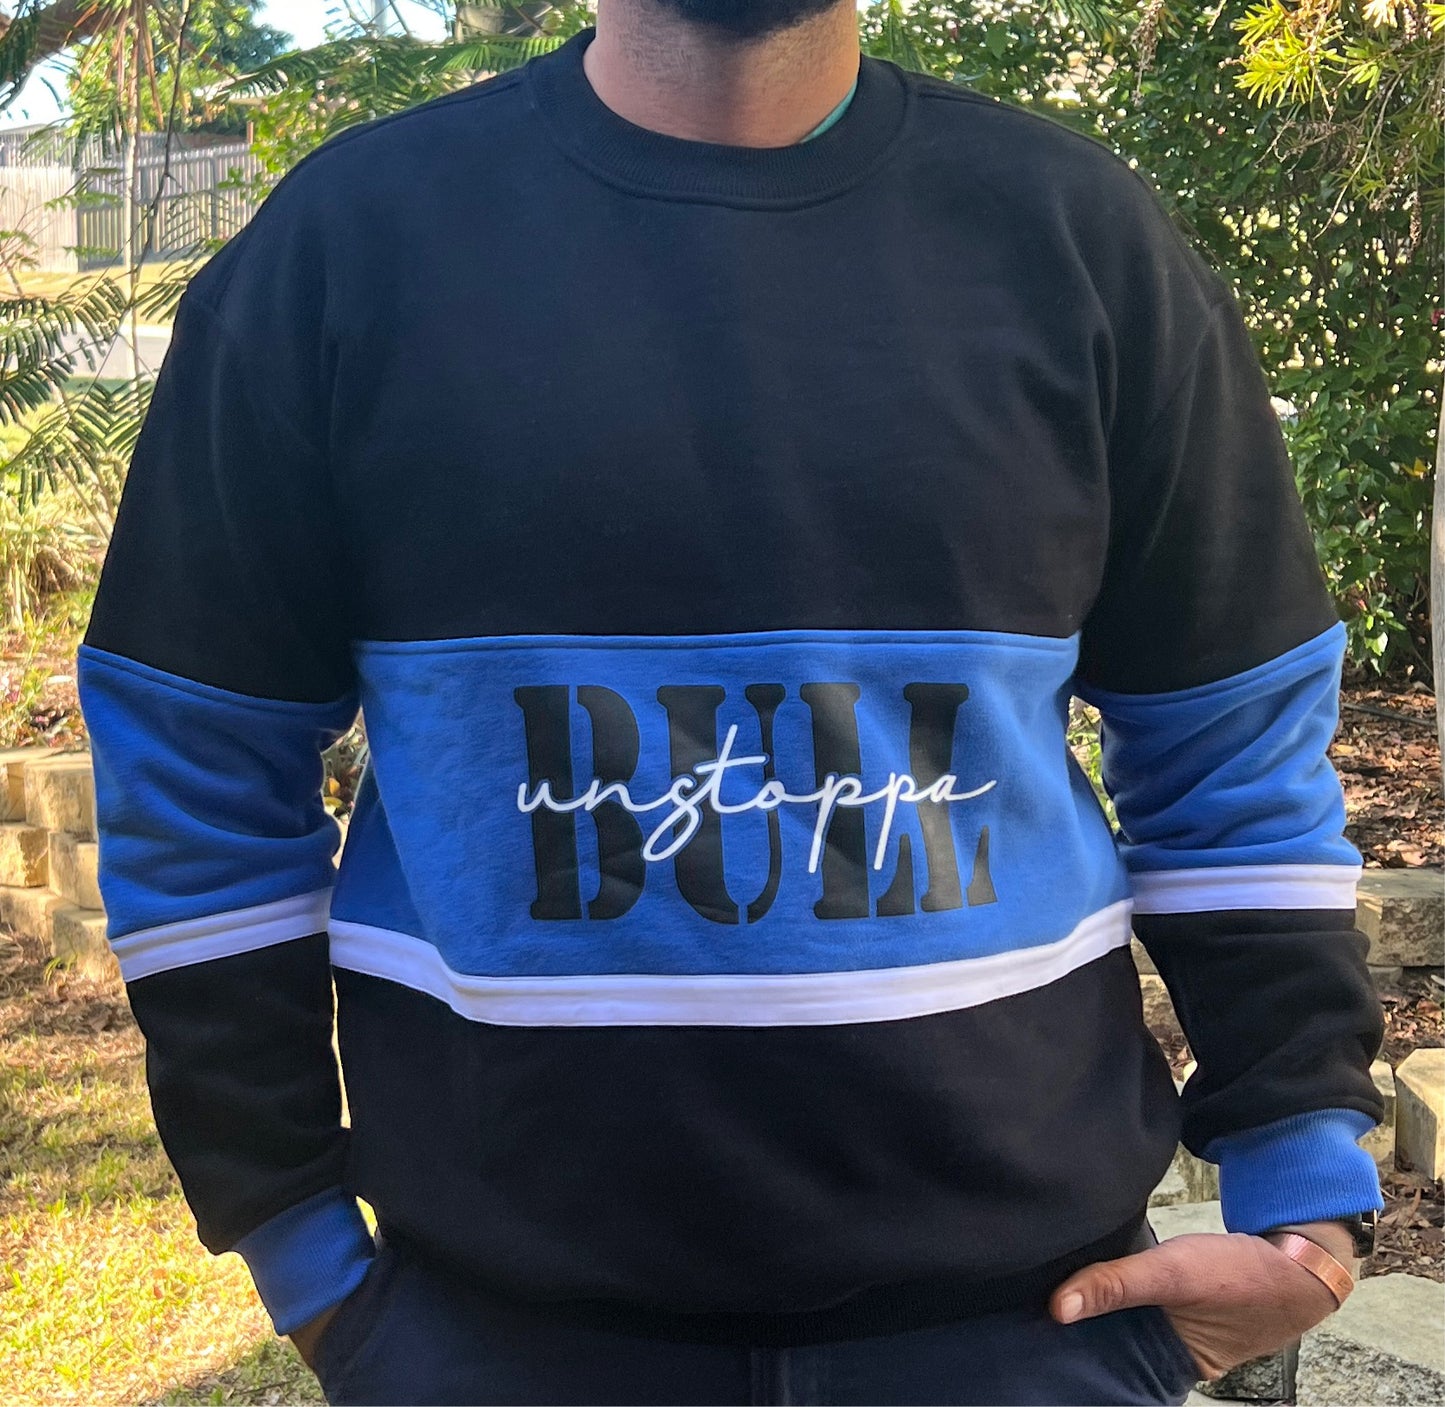 UnstoppaBULL Sweater - Black/Blue